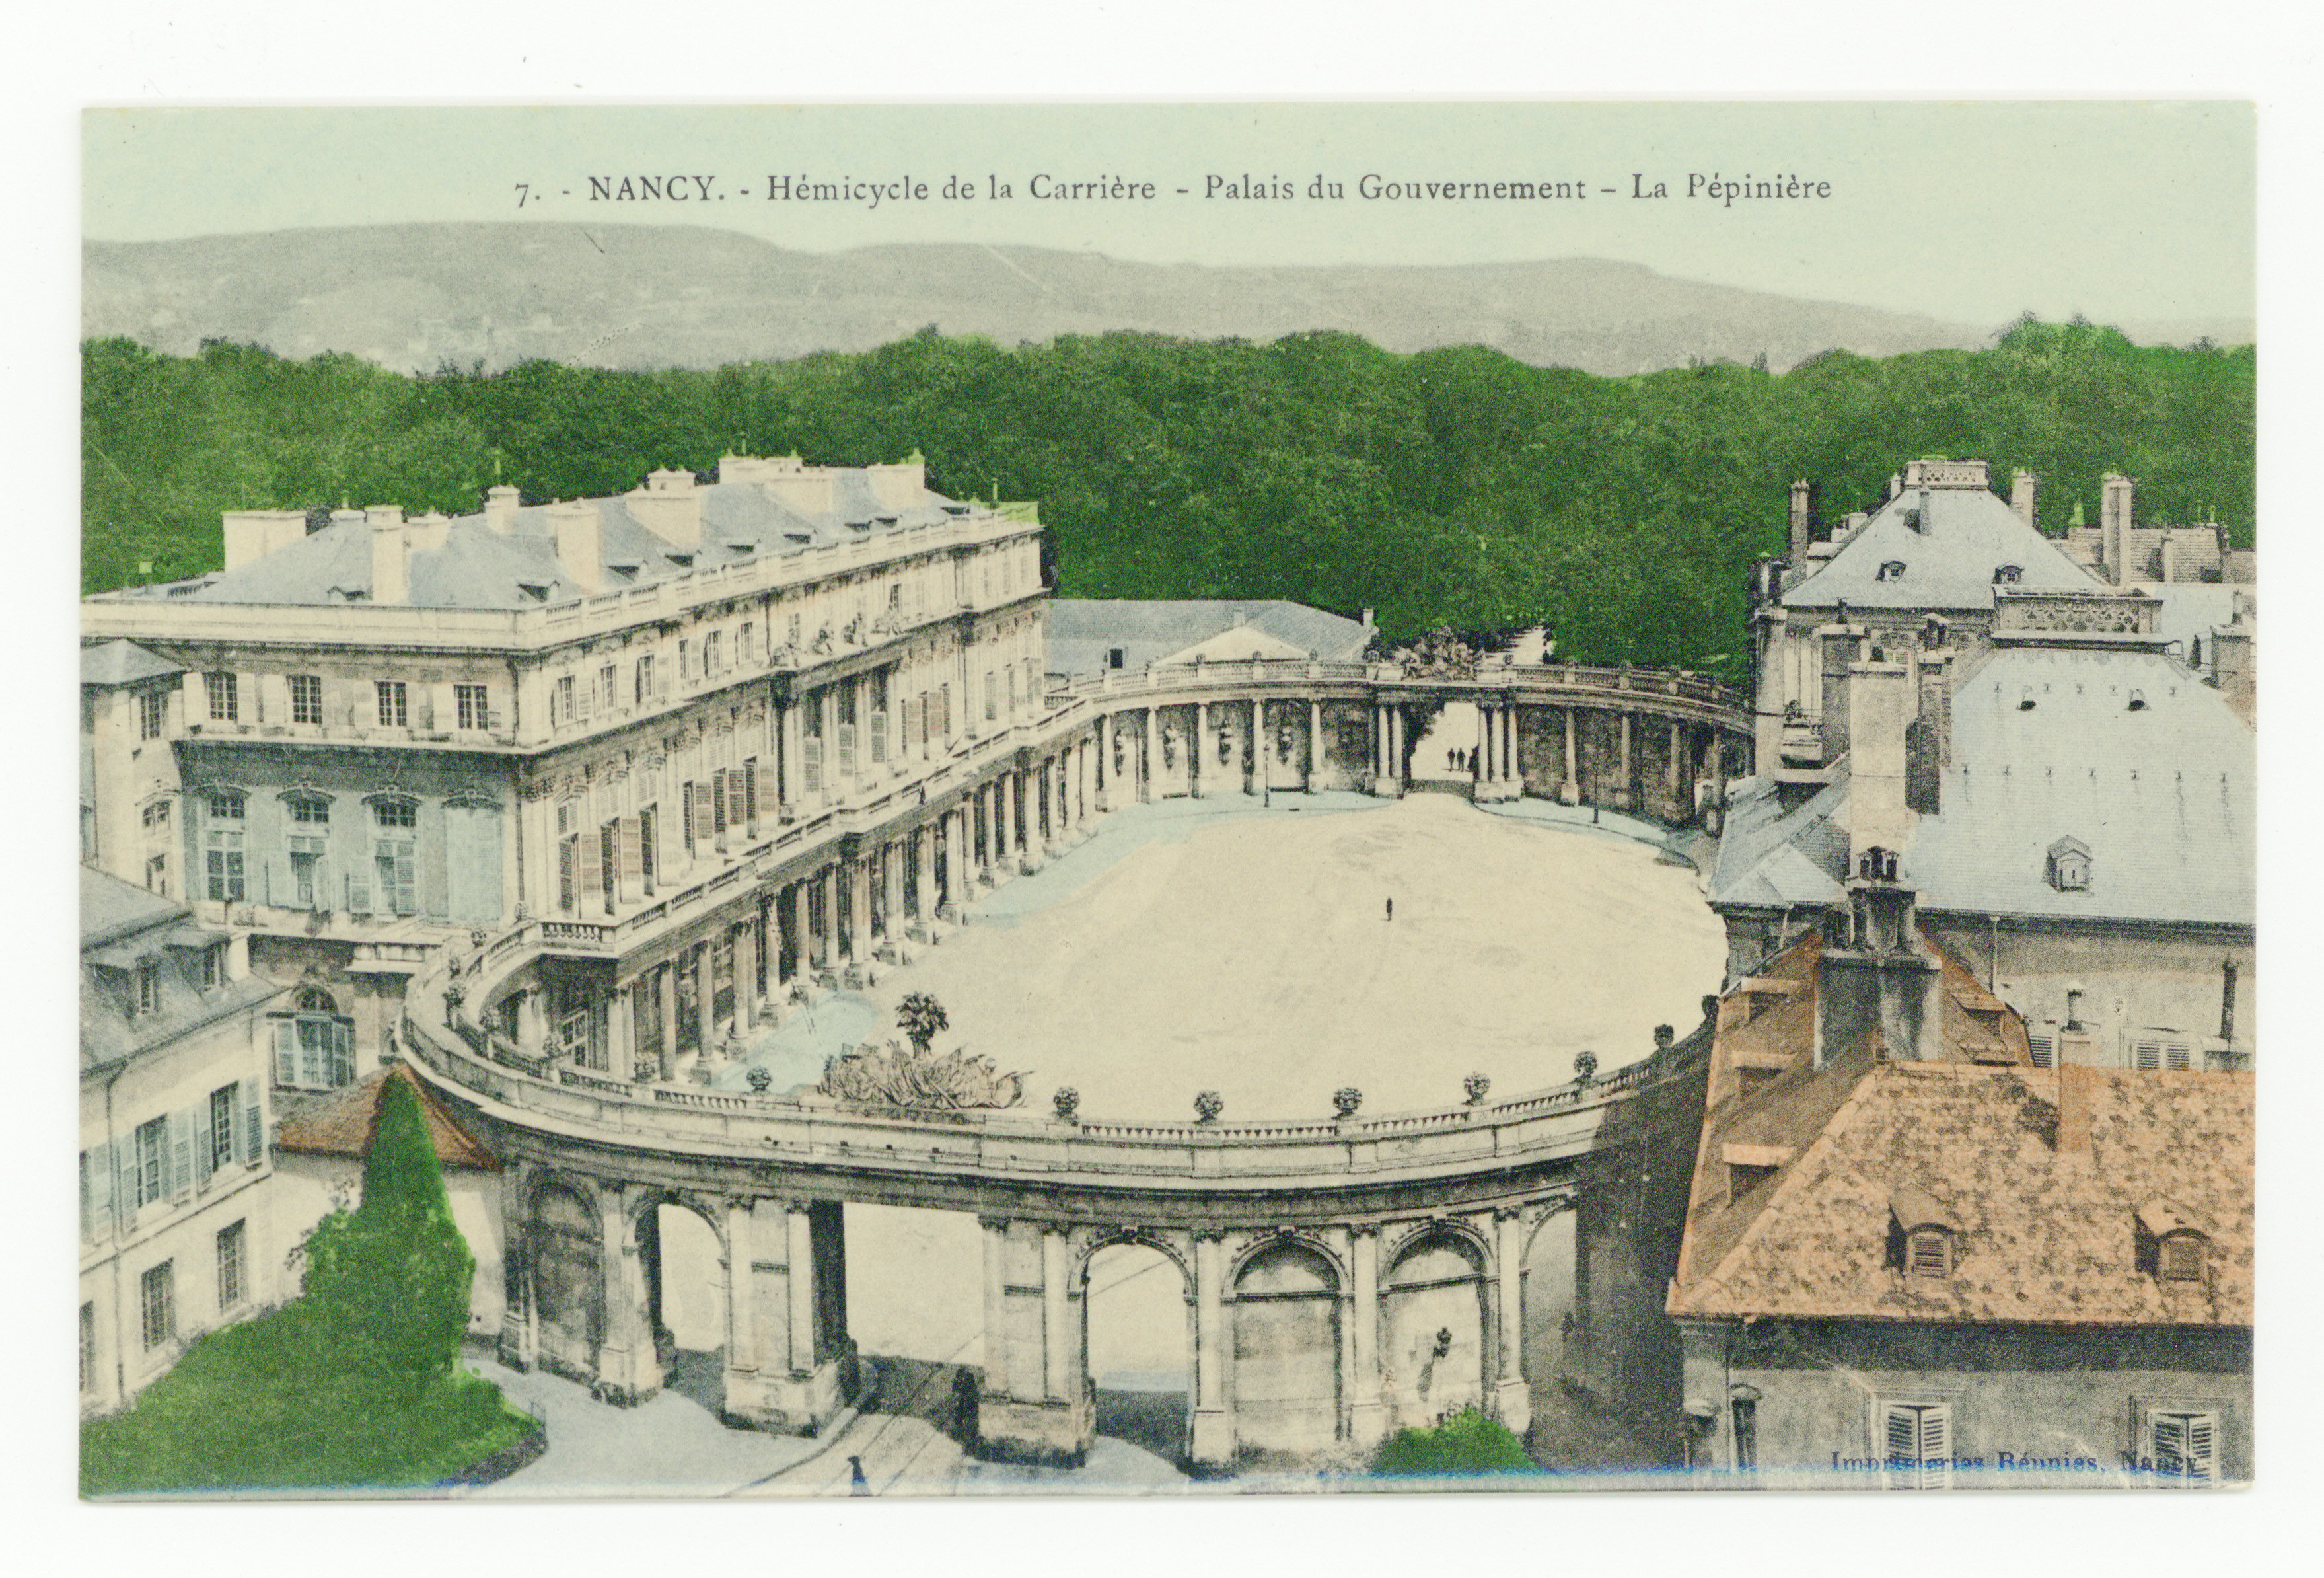 Contenu du Nancy : hémicycle de la Carrière, palais du gouvernement, la Pépinière